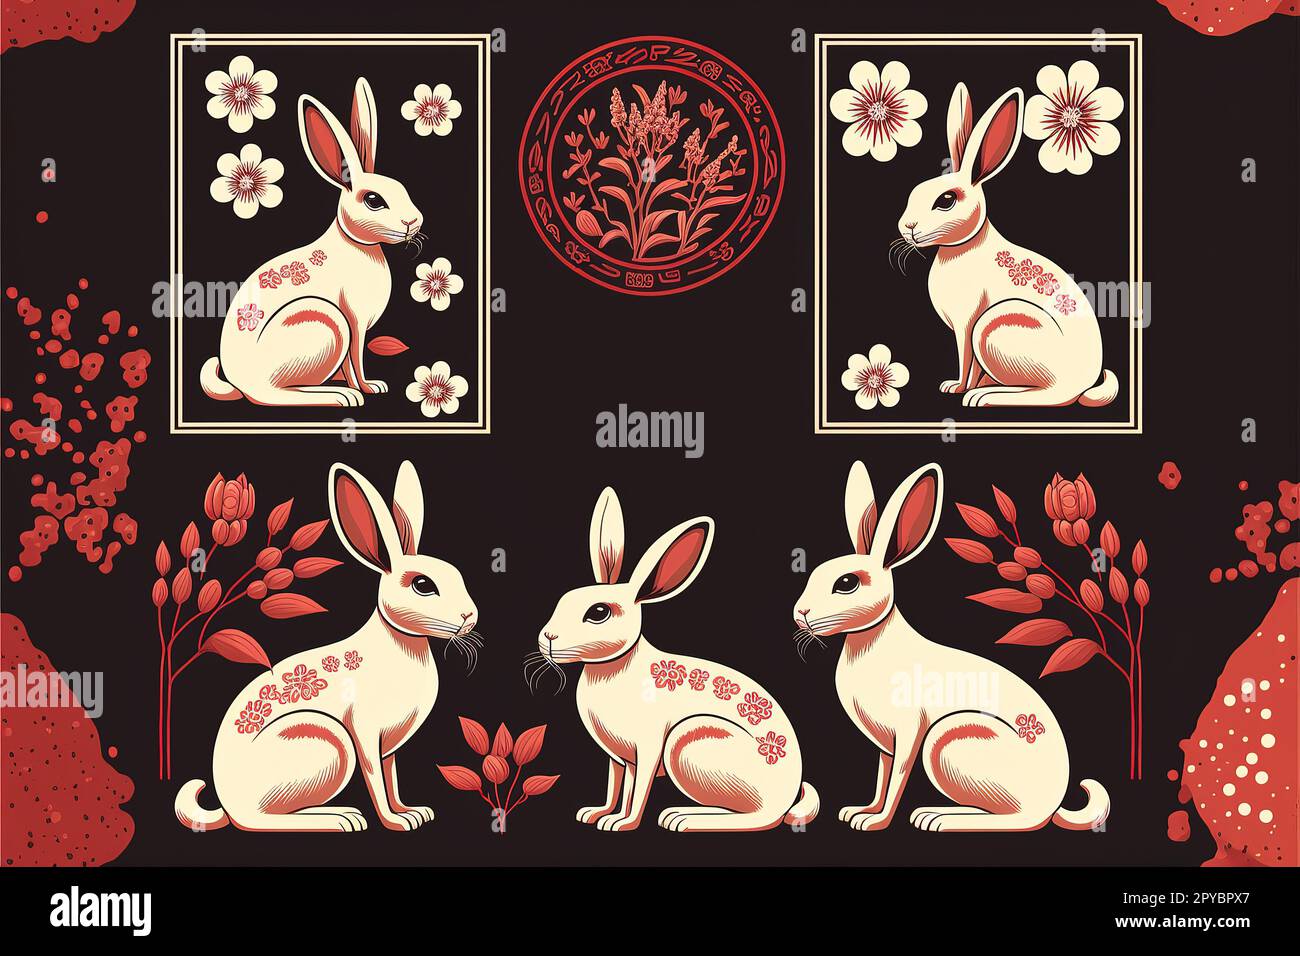 Chinesisches Mondneujahrstier mit Blumen, asiatischen Kaninchenmarken und rotem Horoskop-Vektor-Illustration-Set Stockfoto